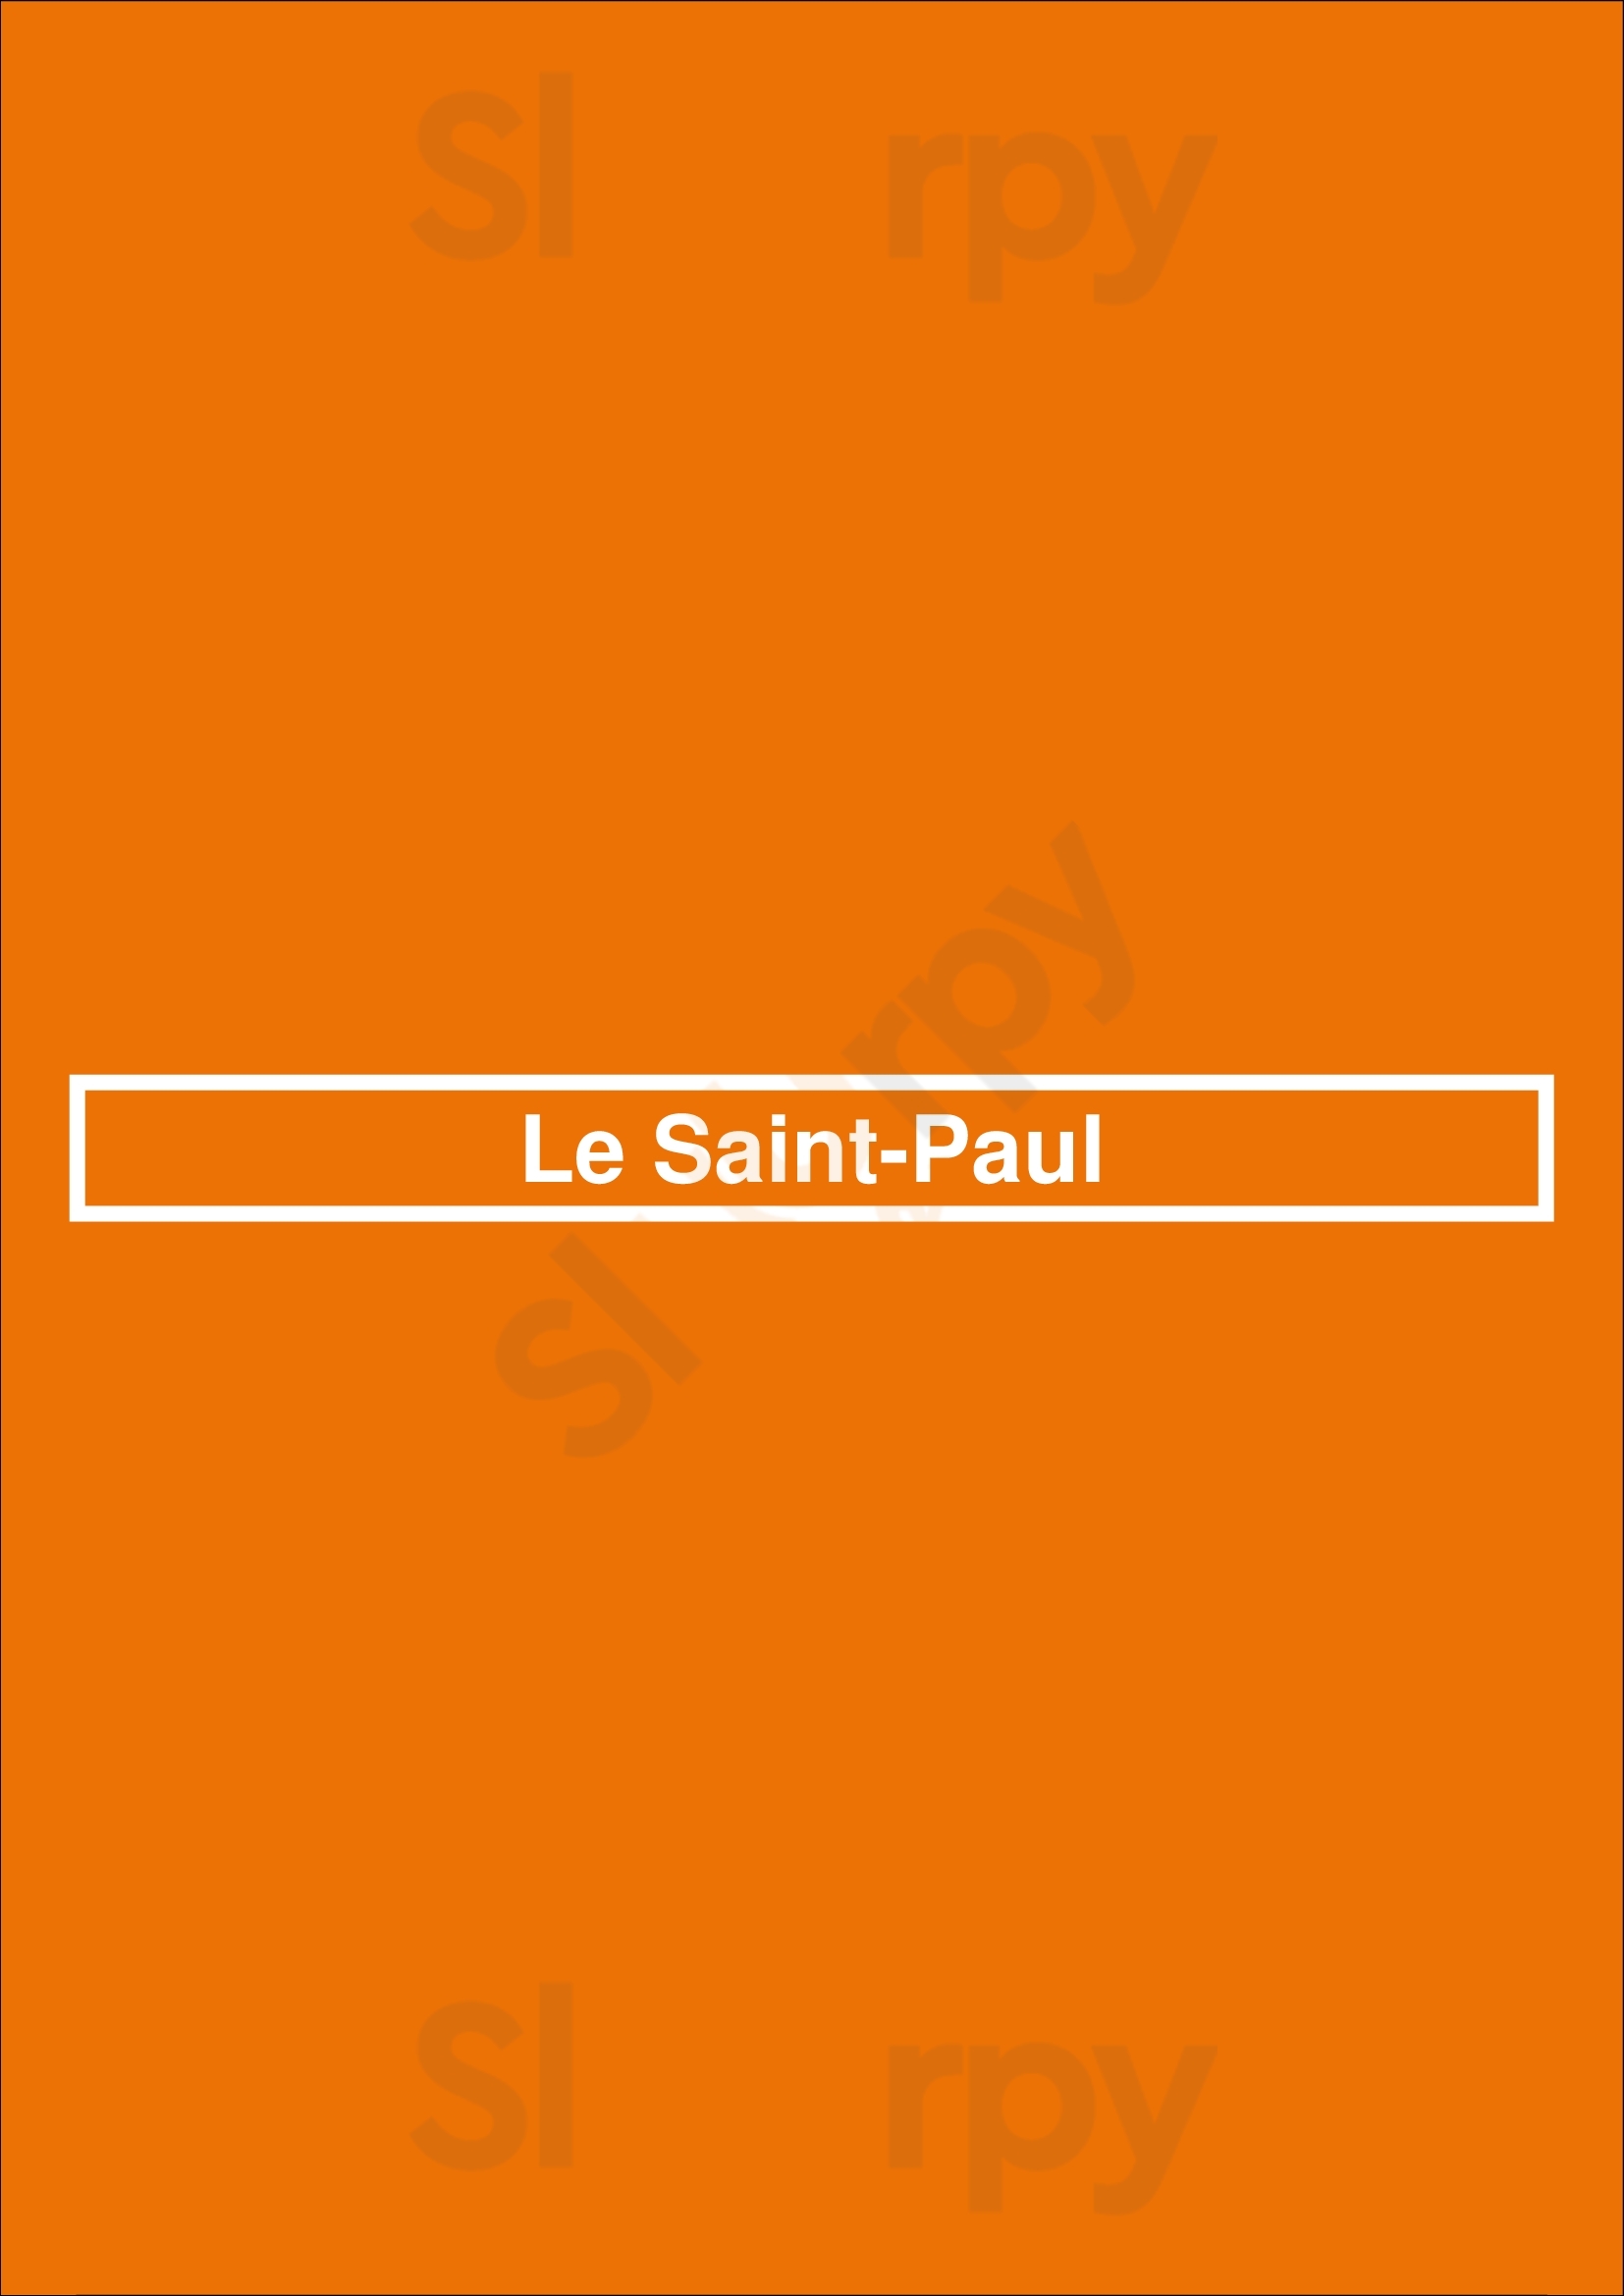 Le Saint-paul Auderghem Menu - 1